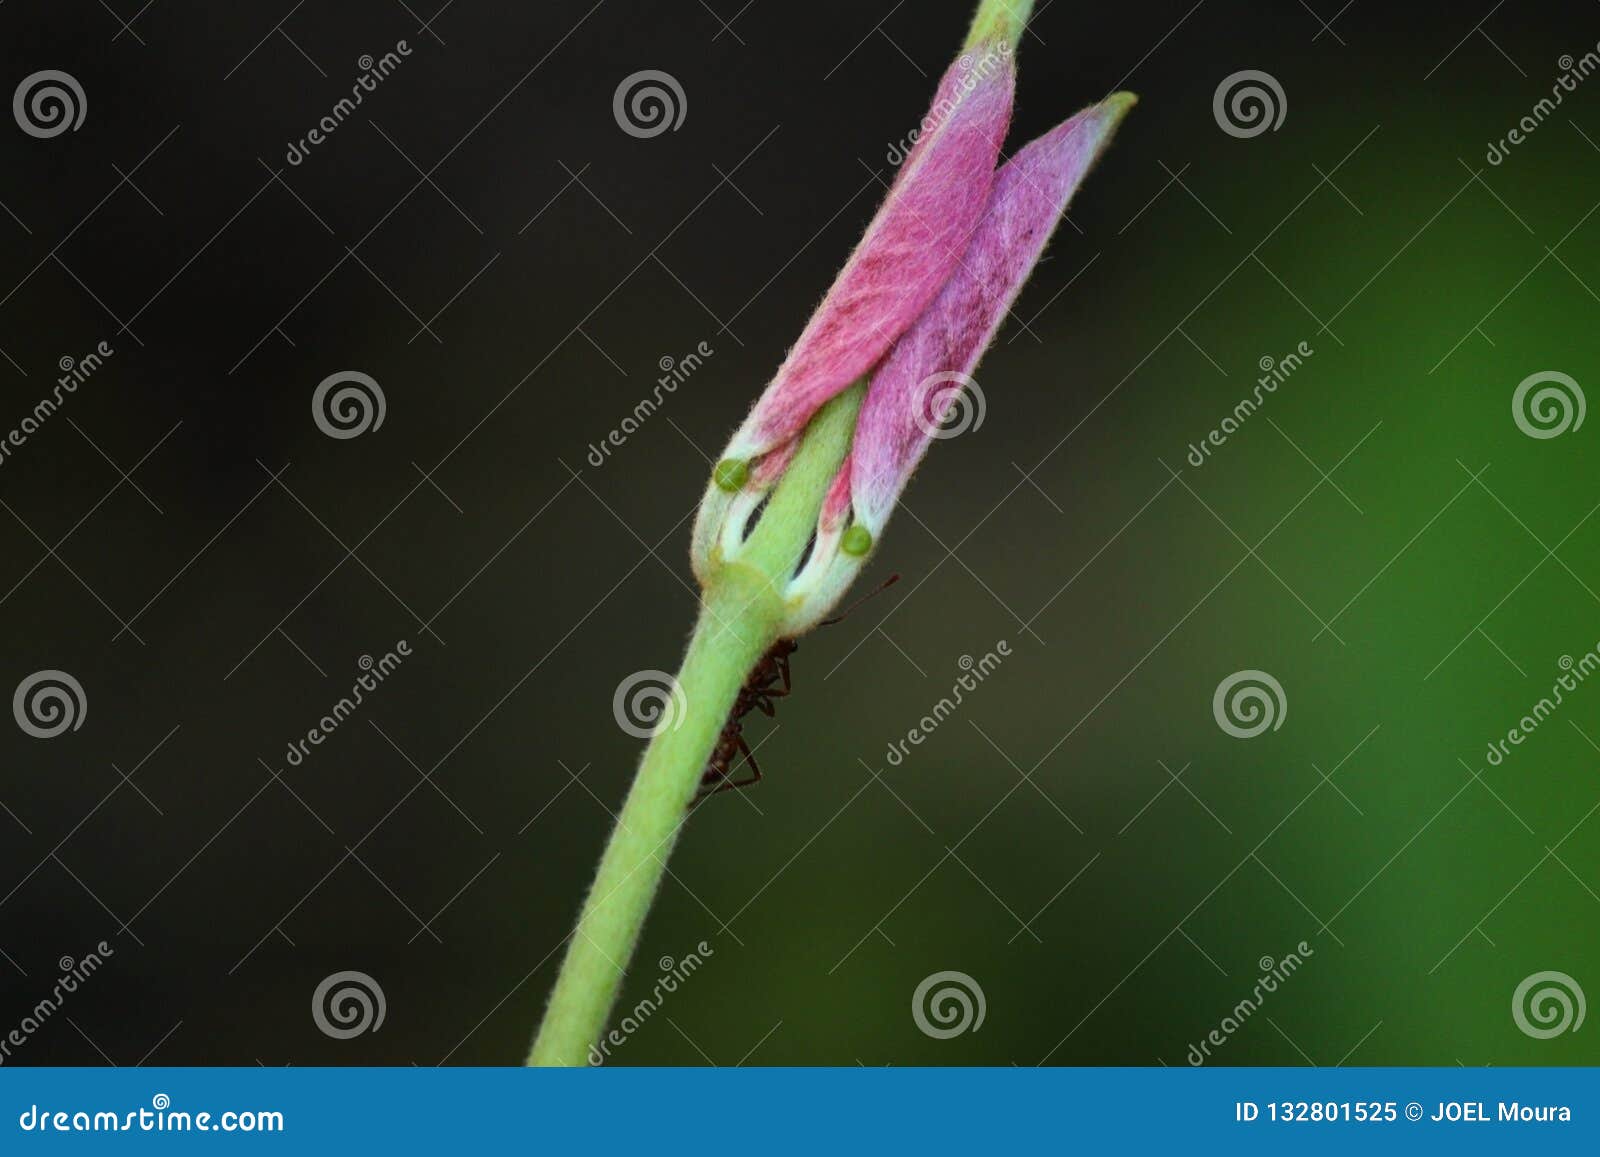 ant in flower